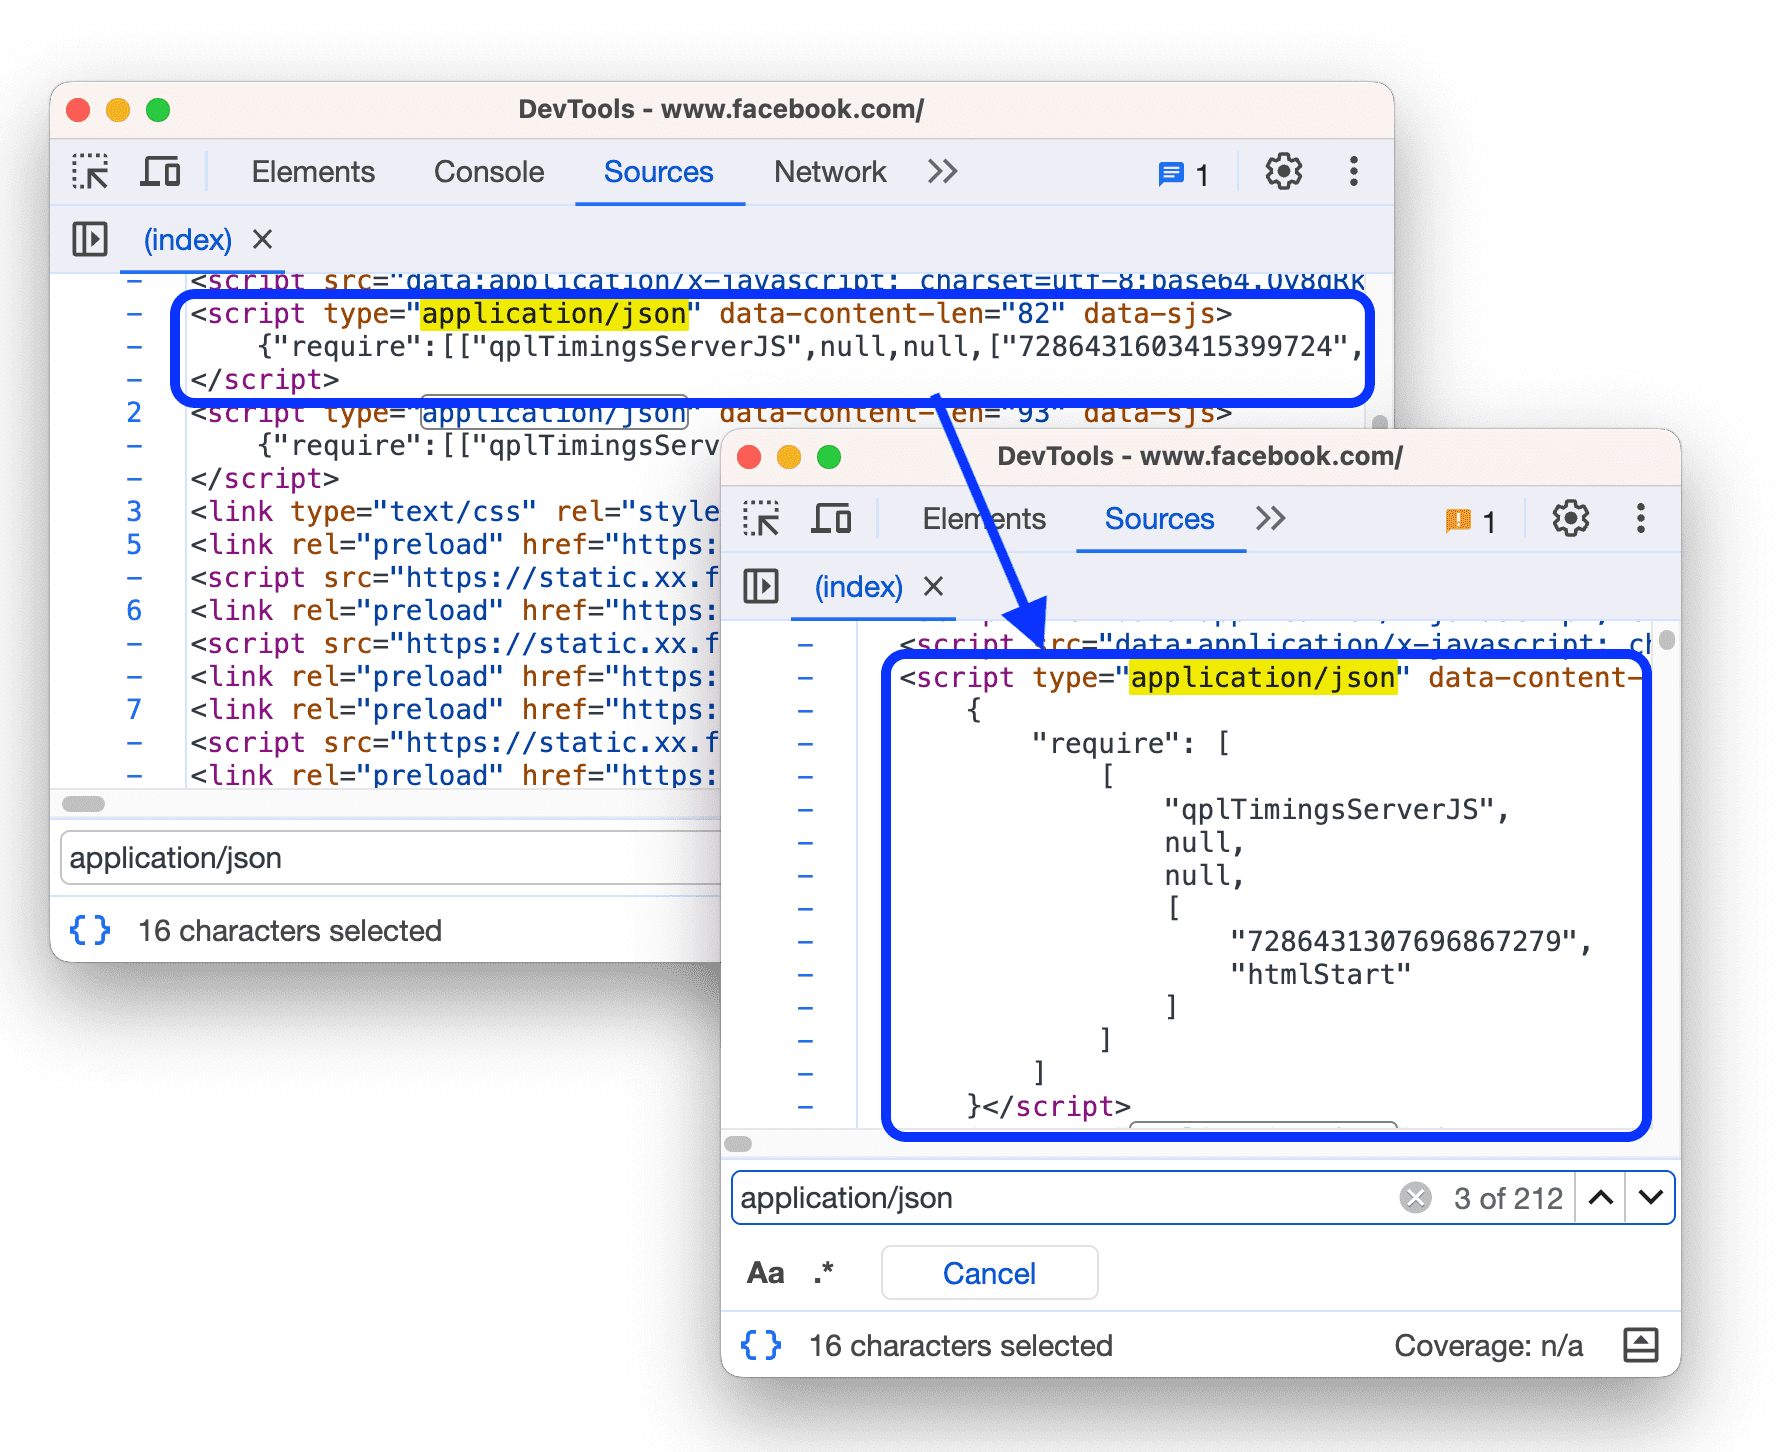 تنسيق JSON المضمَّن قبل وبعد طباعة تنسيق JSON المضمّن في علامة النص البرمجي.